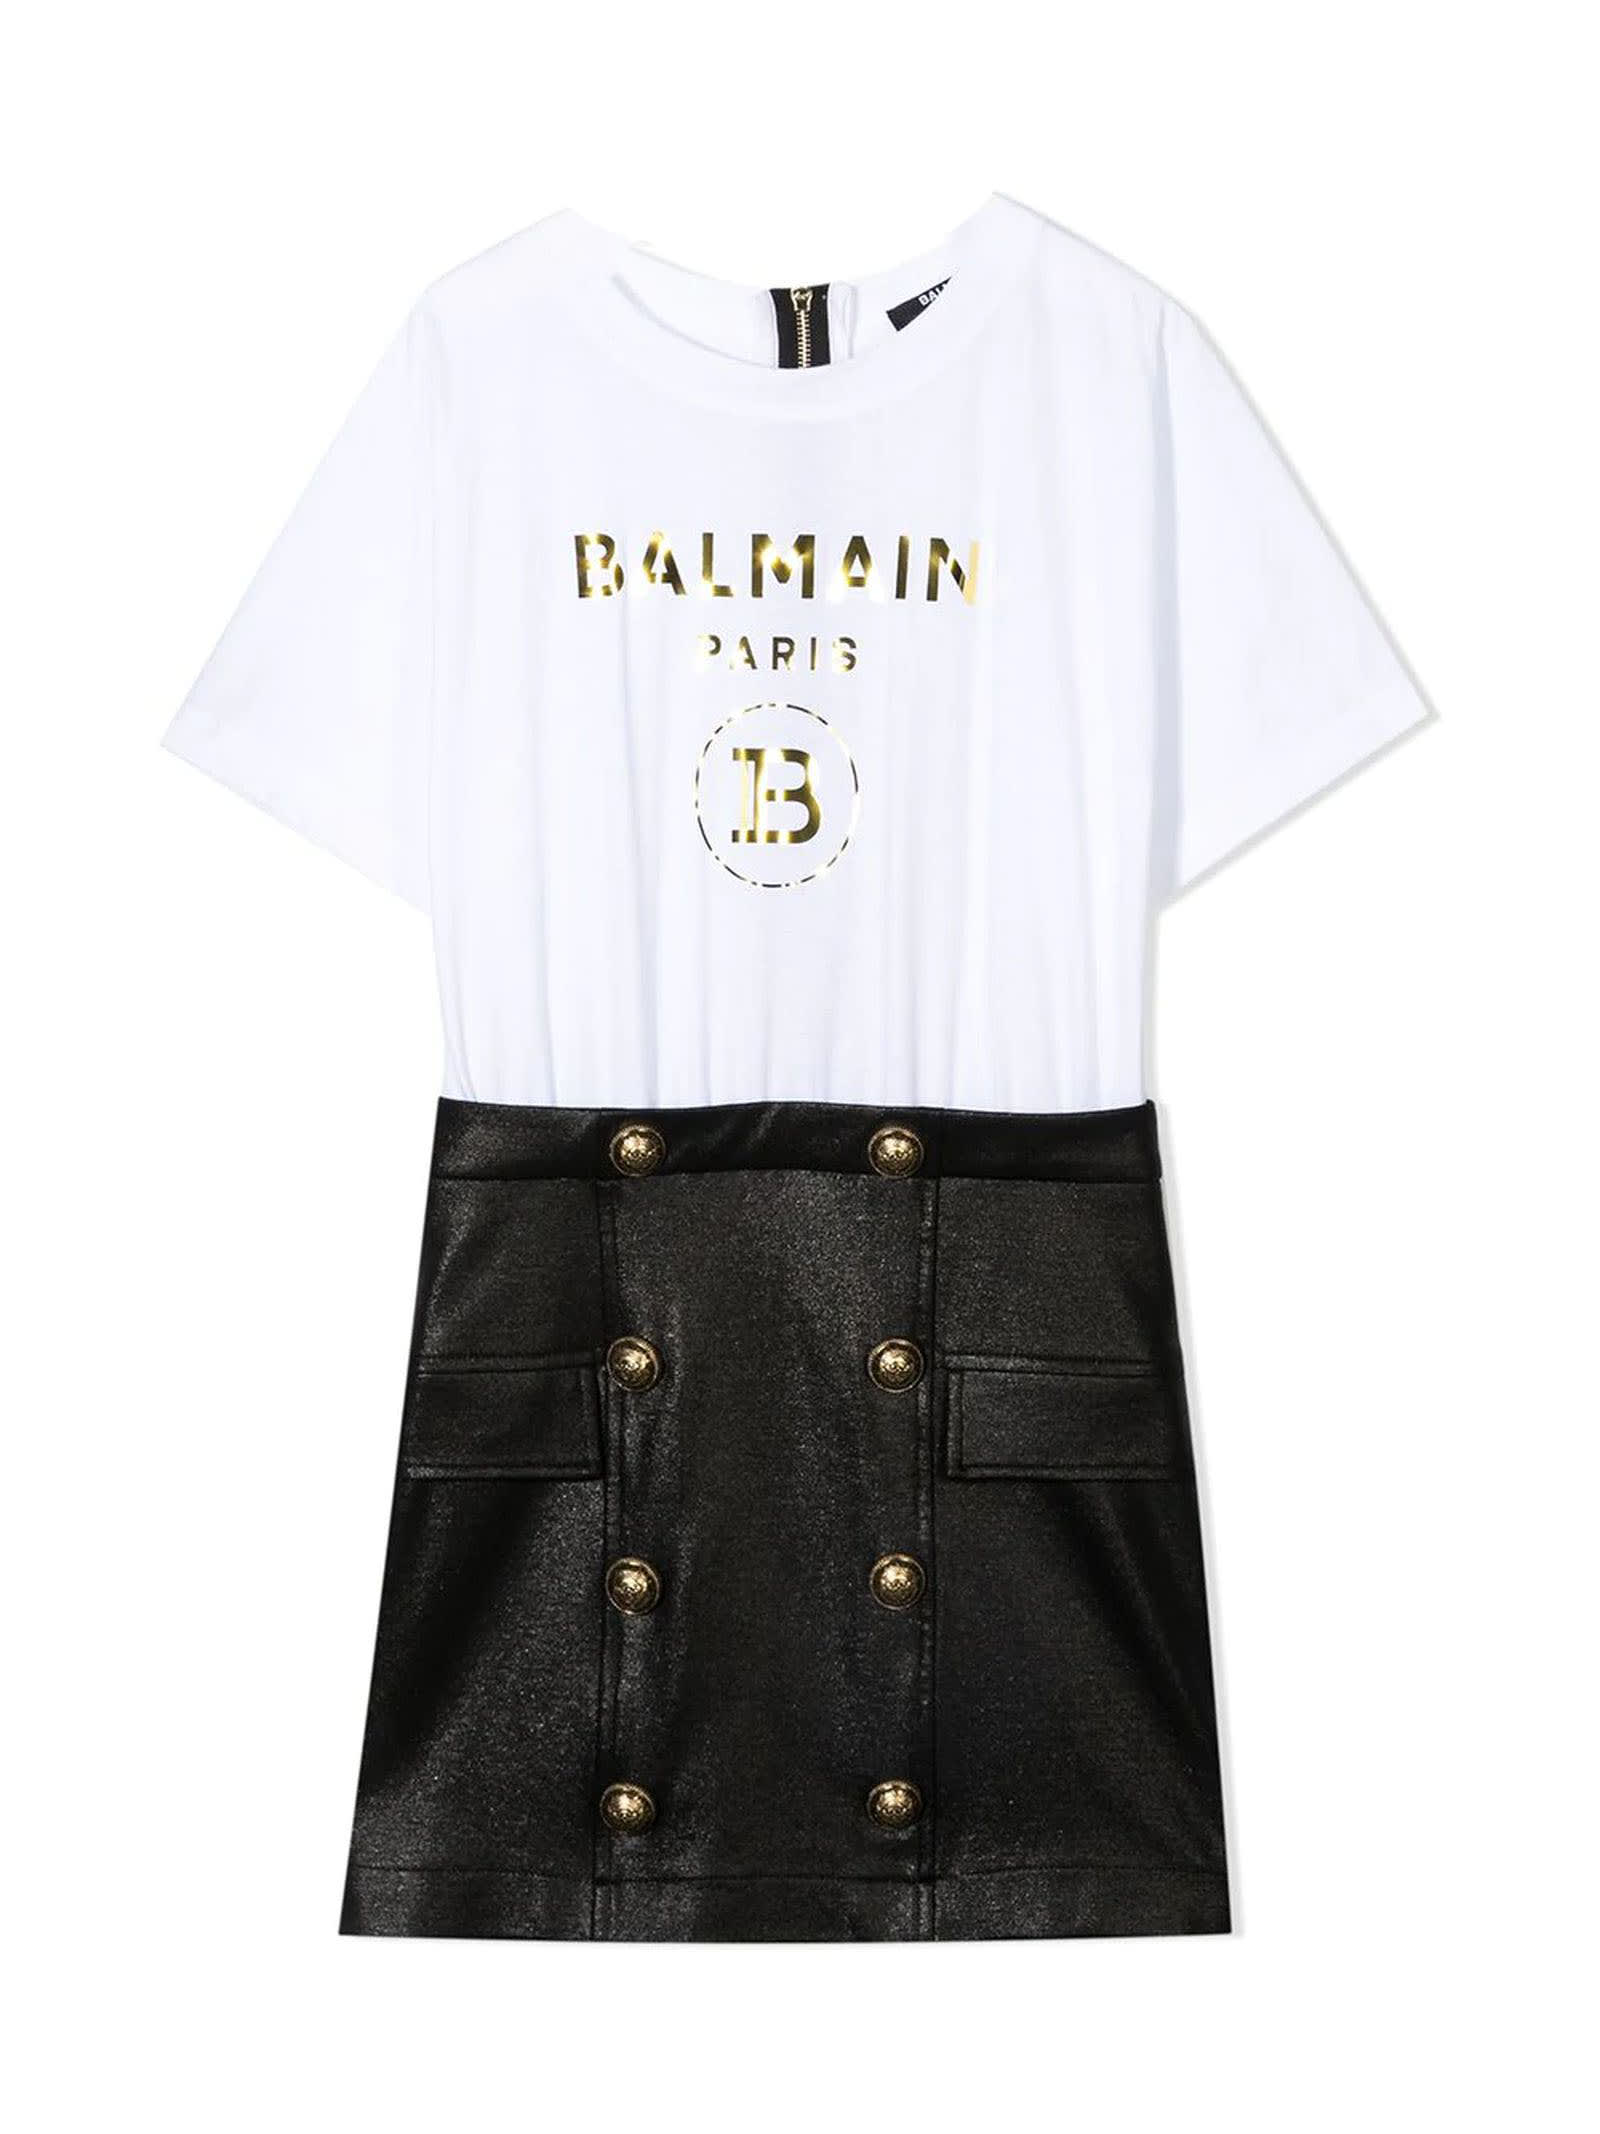 Balmain T-shirt Skirt Panelled Dress